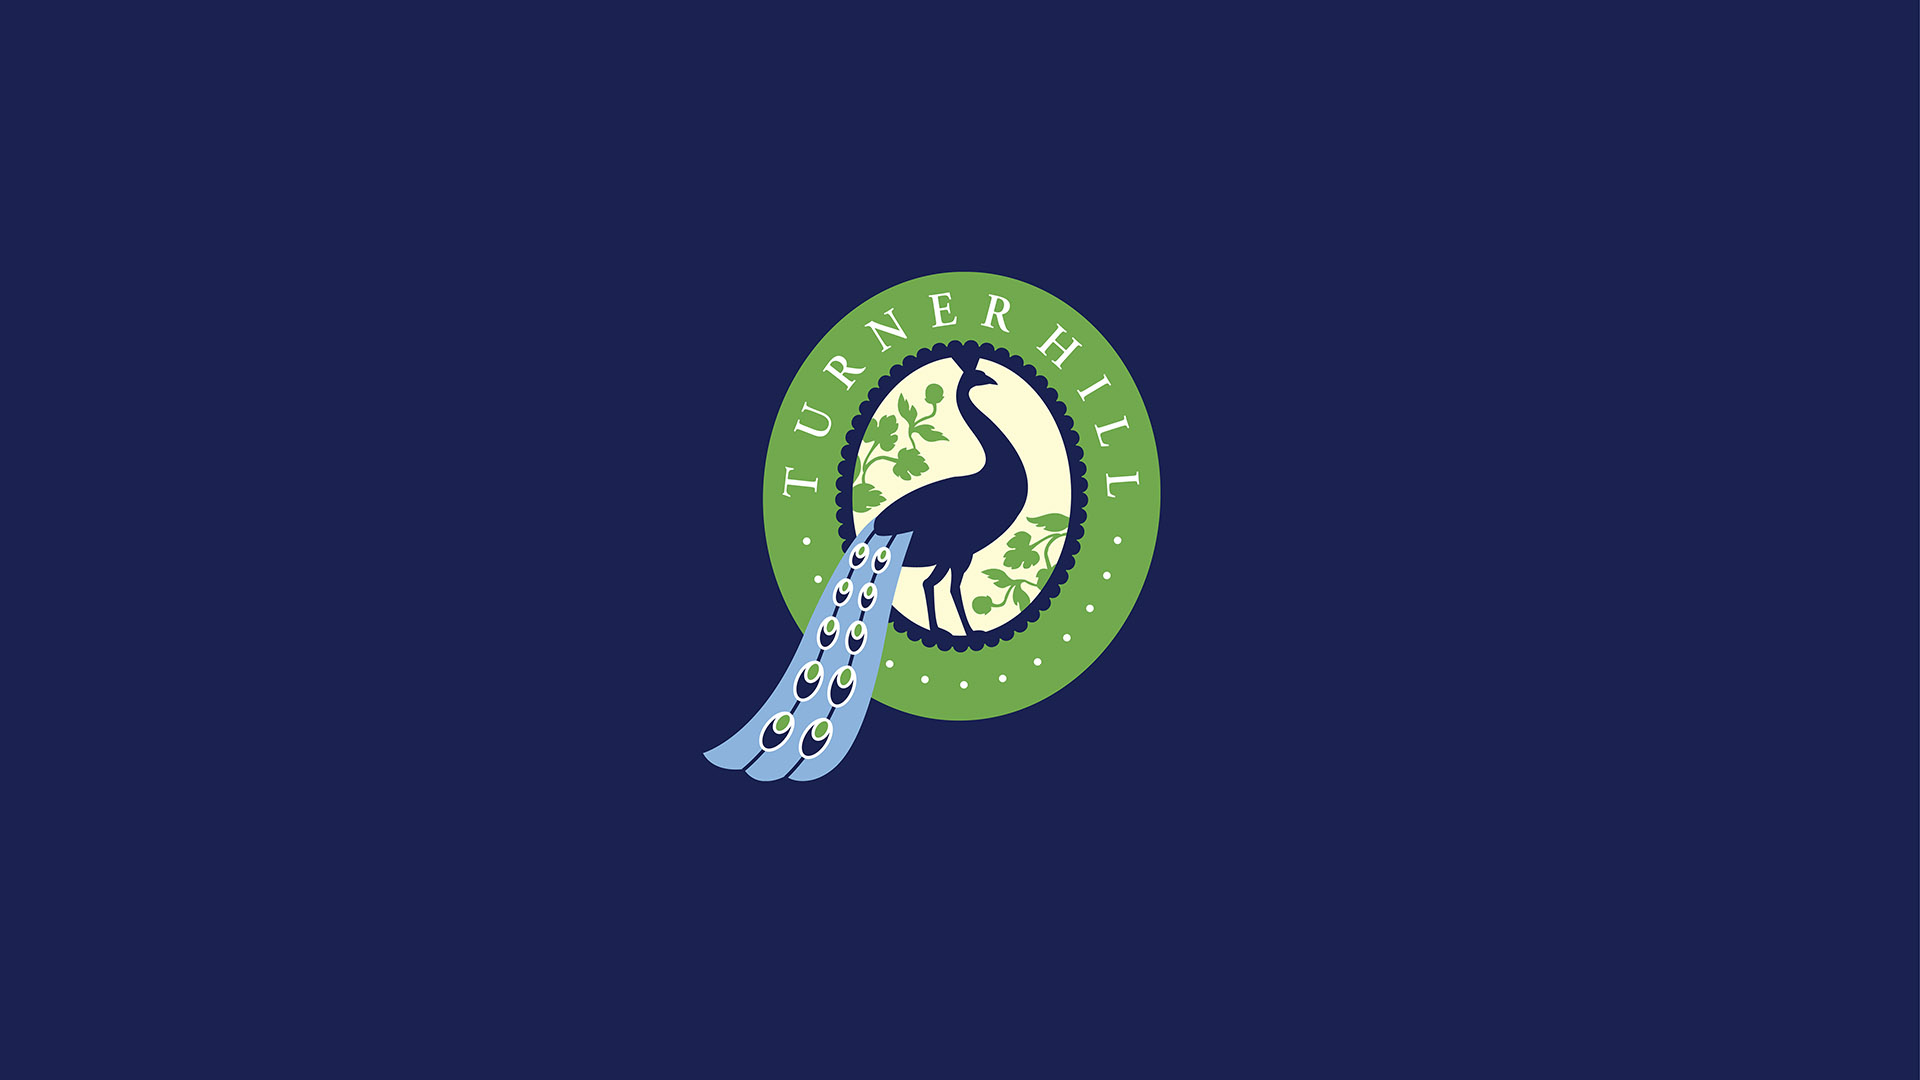 turner hill logo on blue